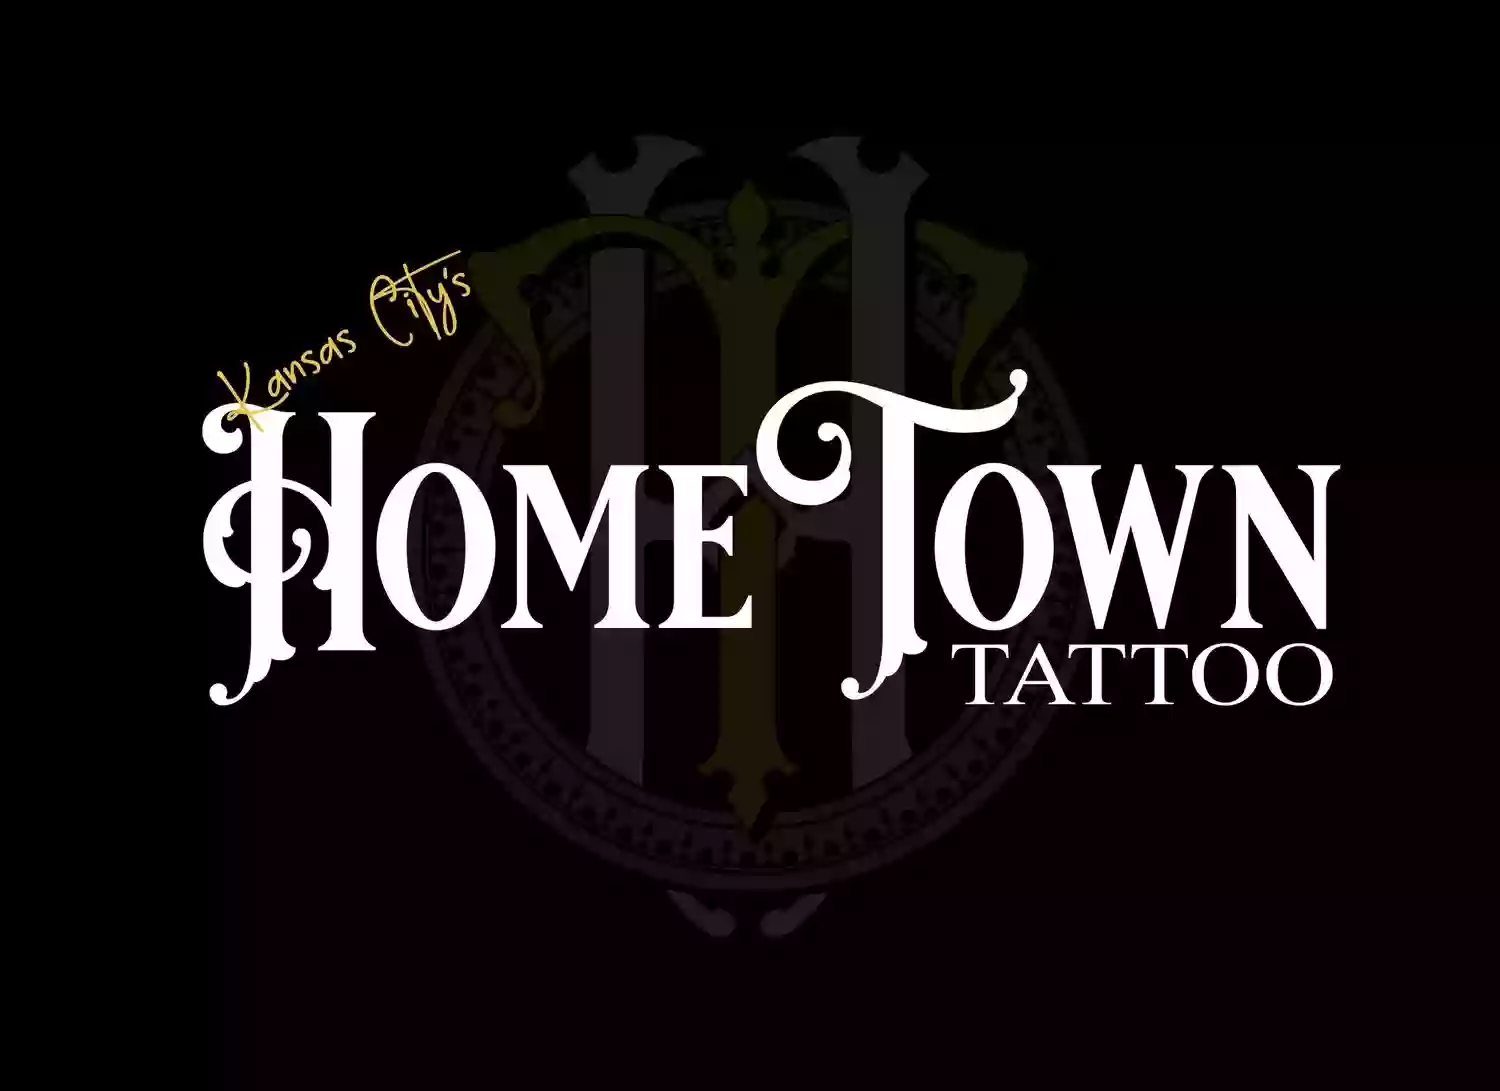 Kansas City's Hometown Tattoo